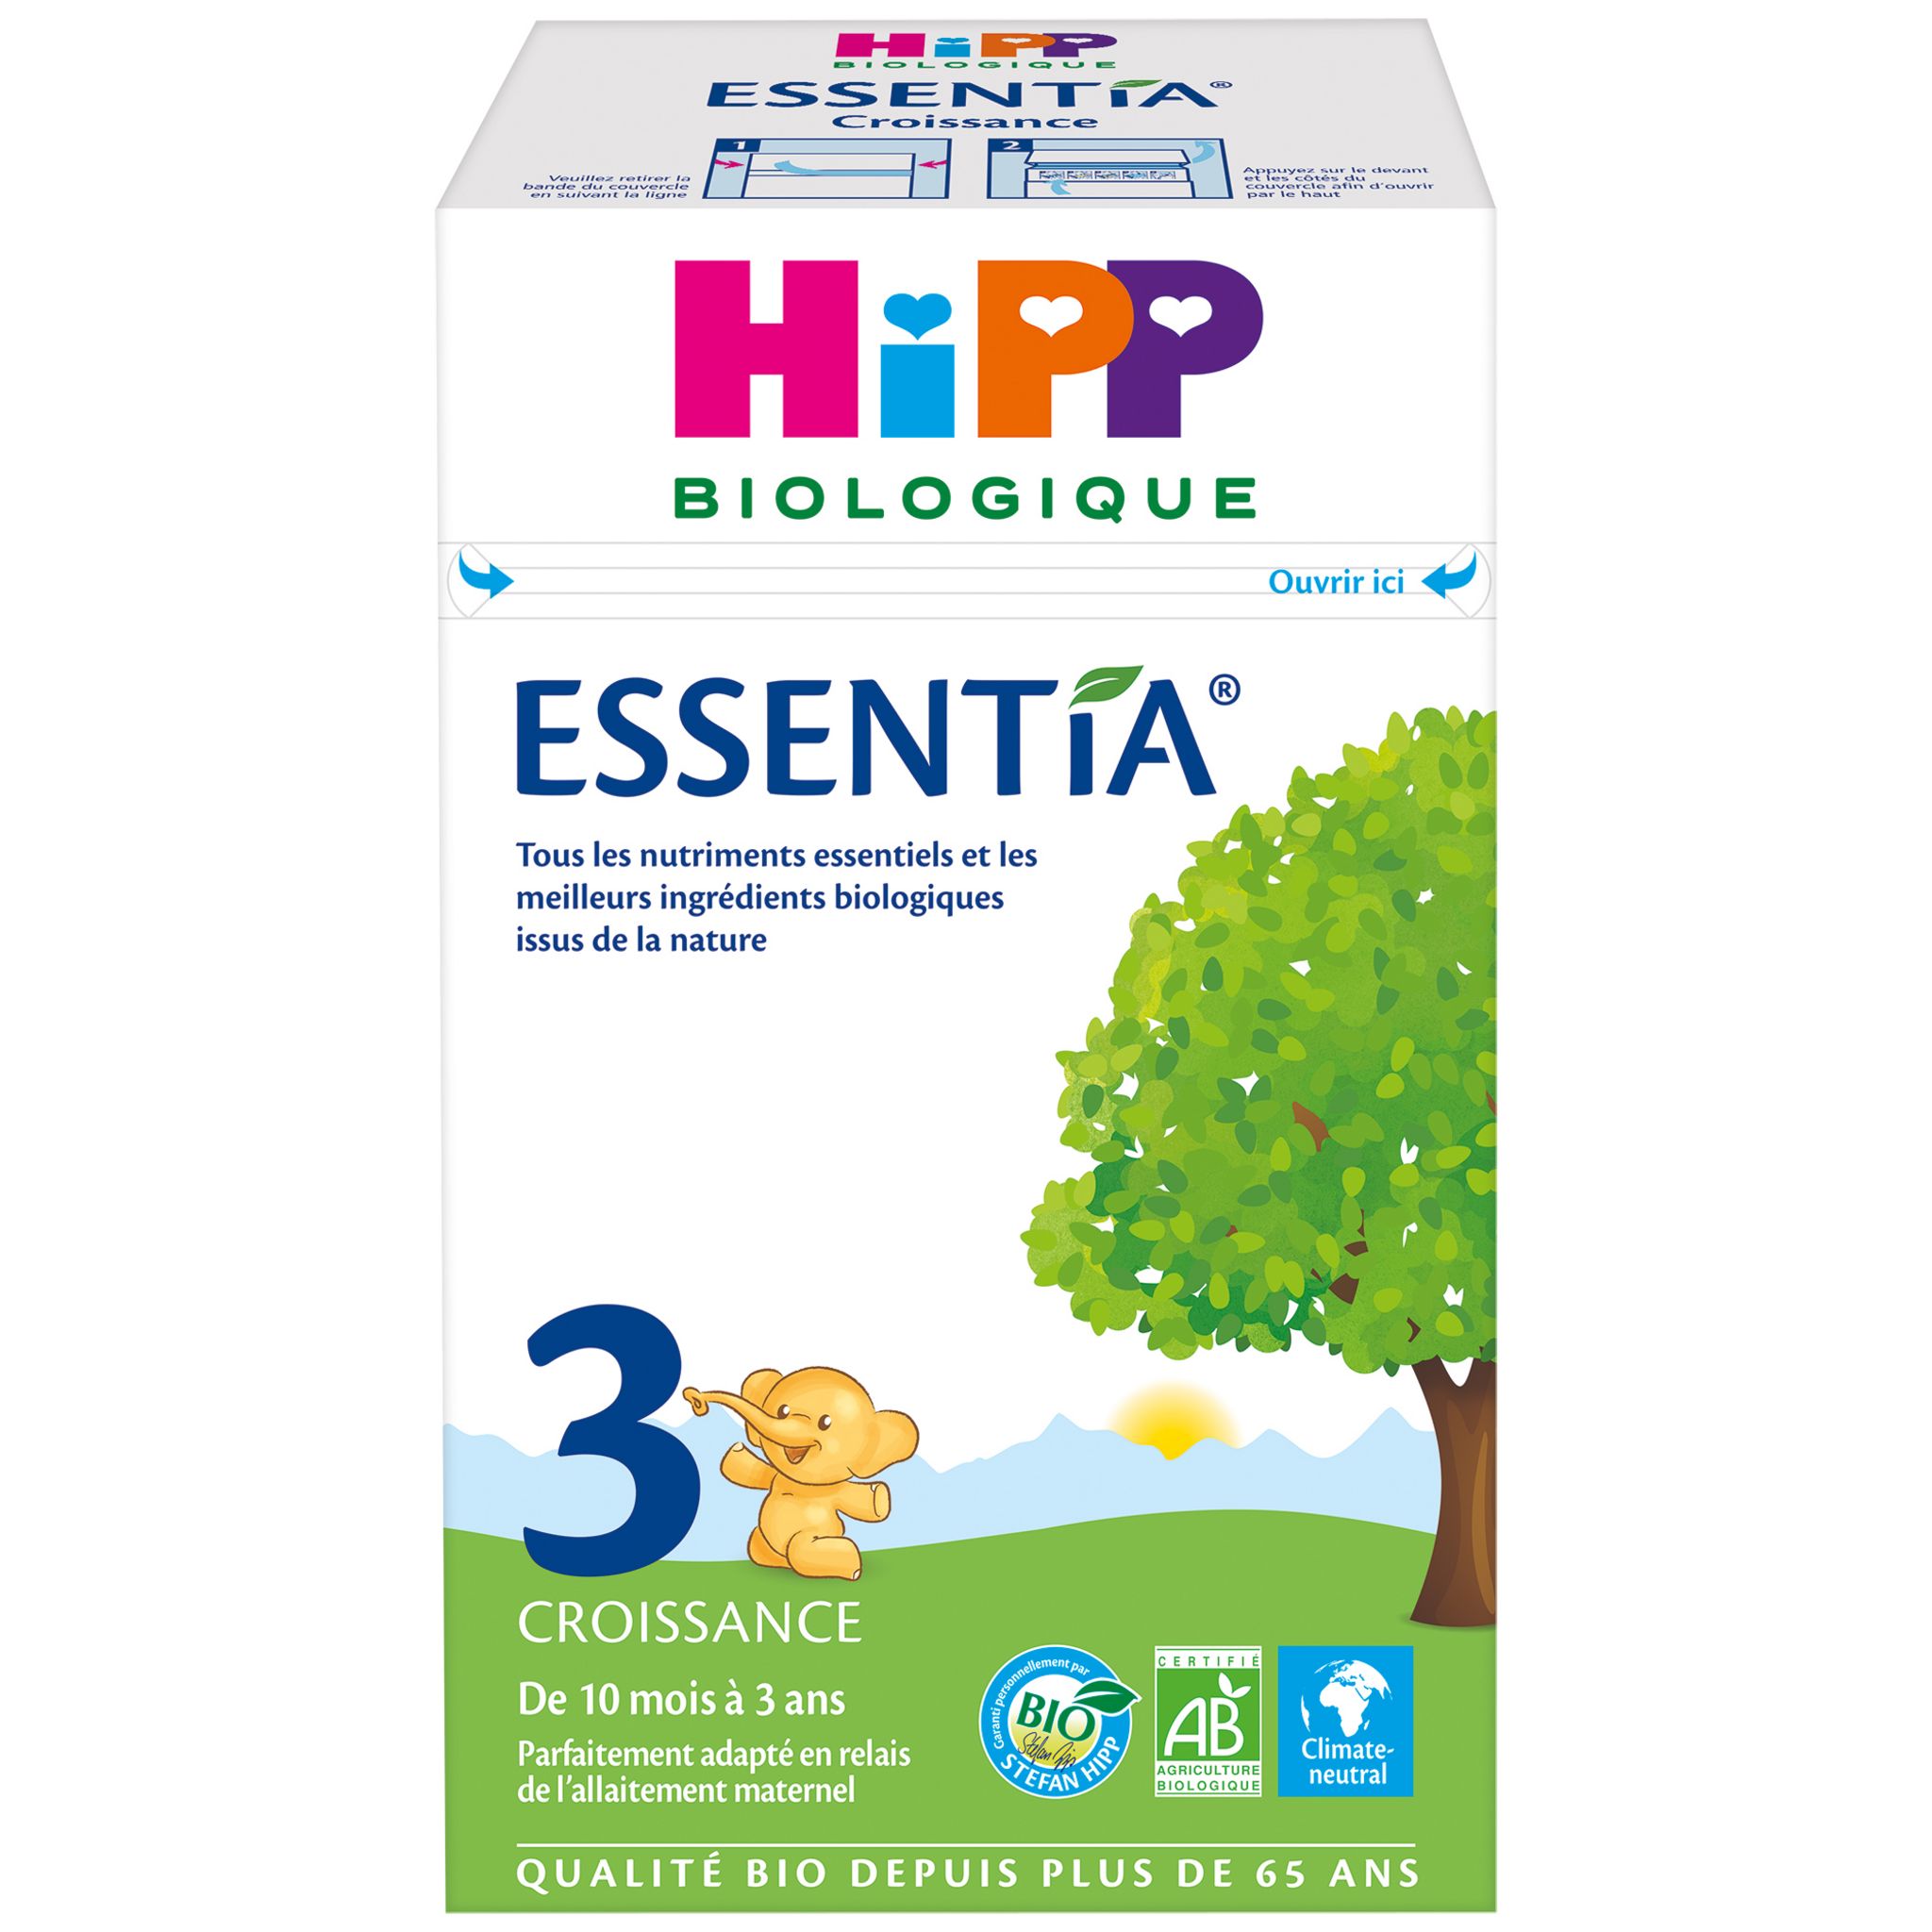 Promo Hipp biologique croissance combiotic 3 chez Auchan